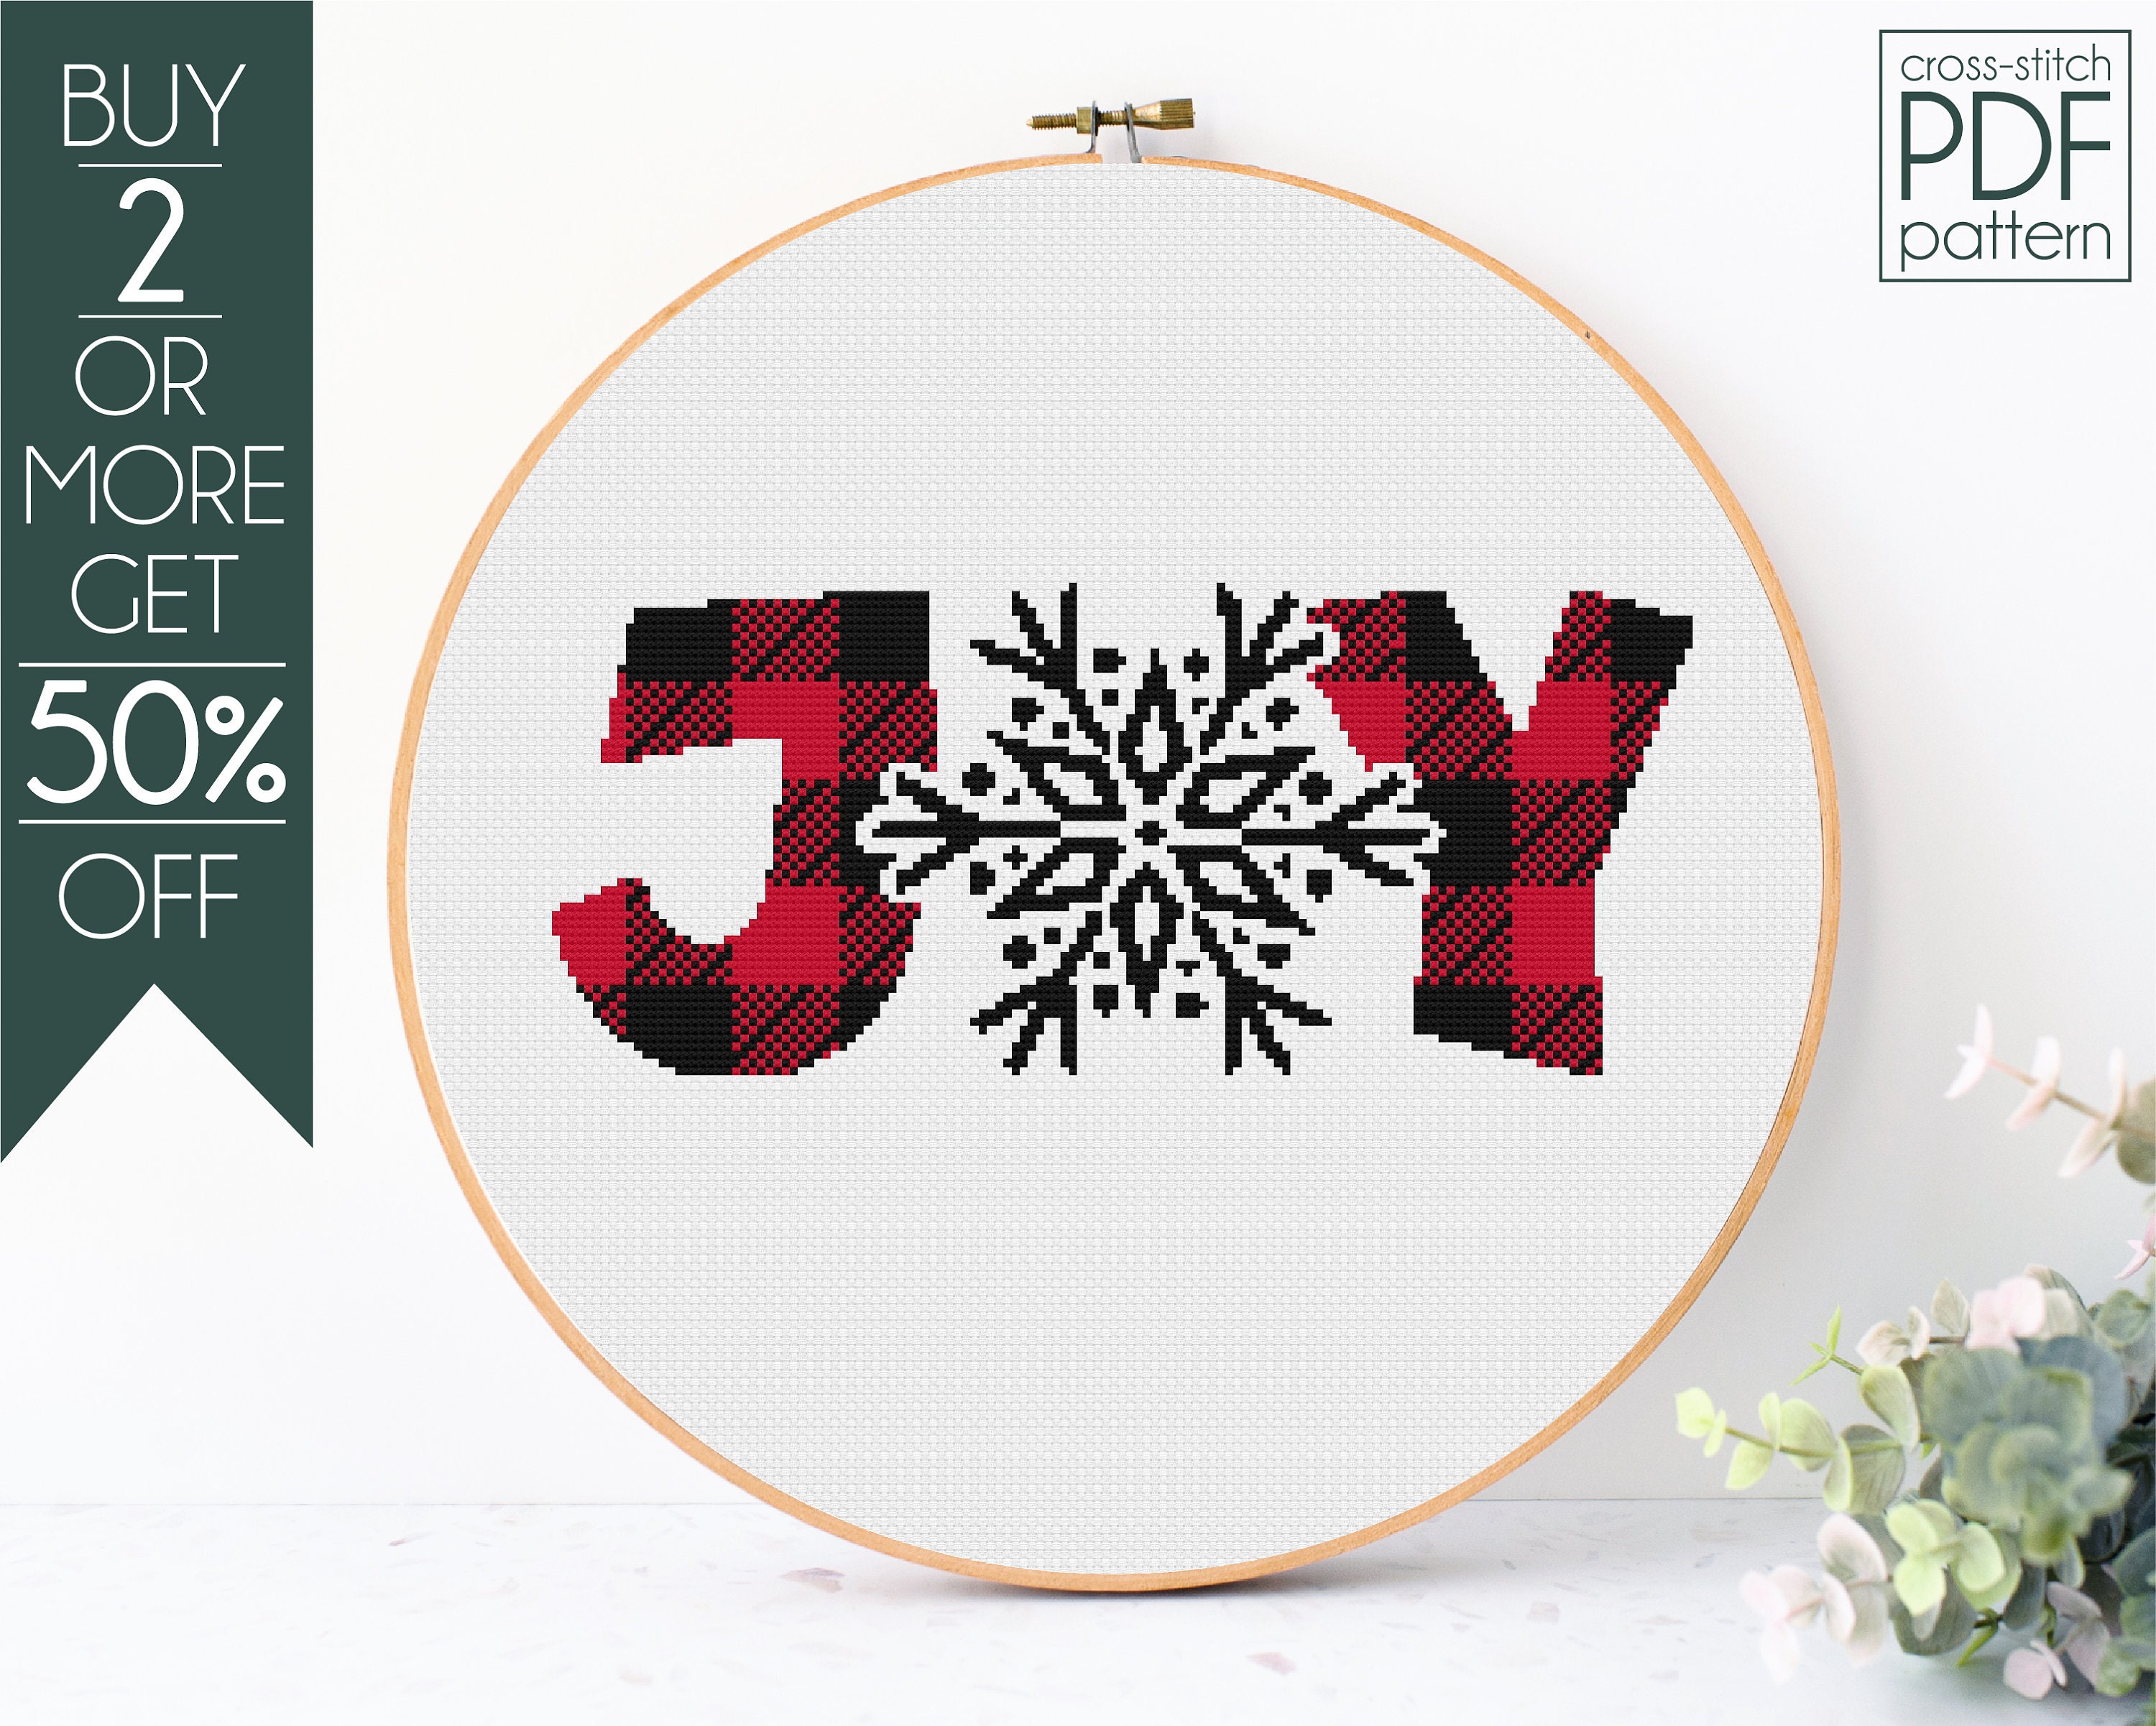 JOY cross stitch pattern in folk style, easy beginner cross - Inspire Uplift